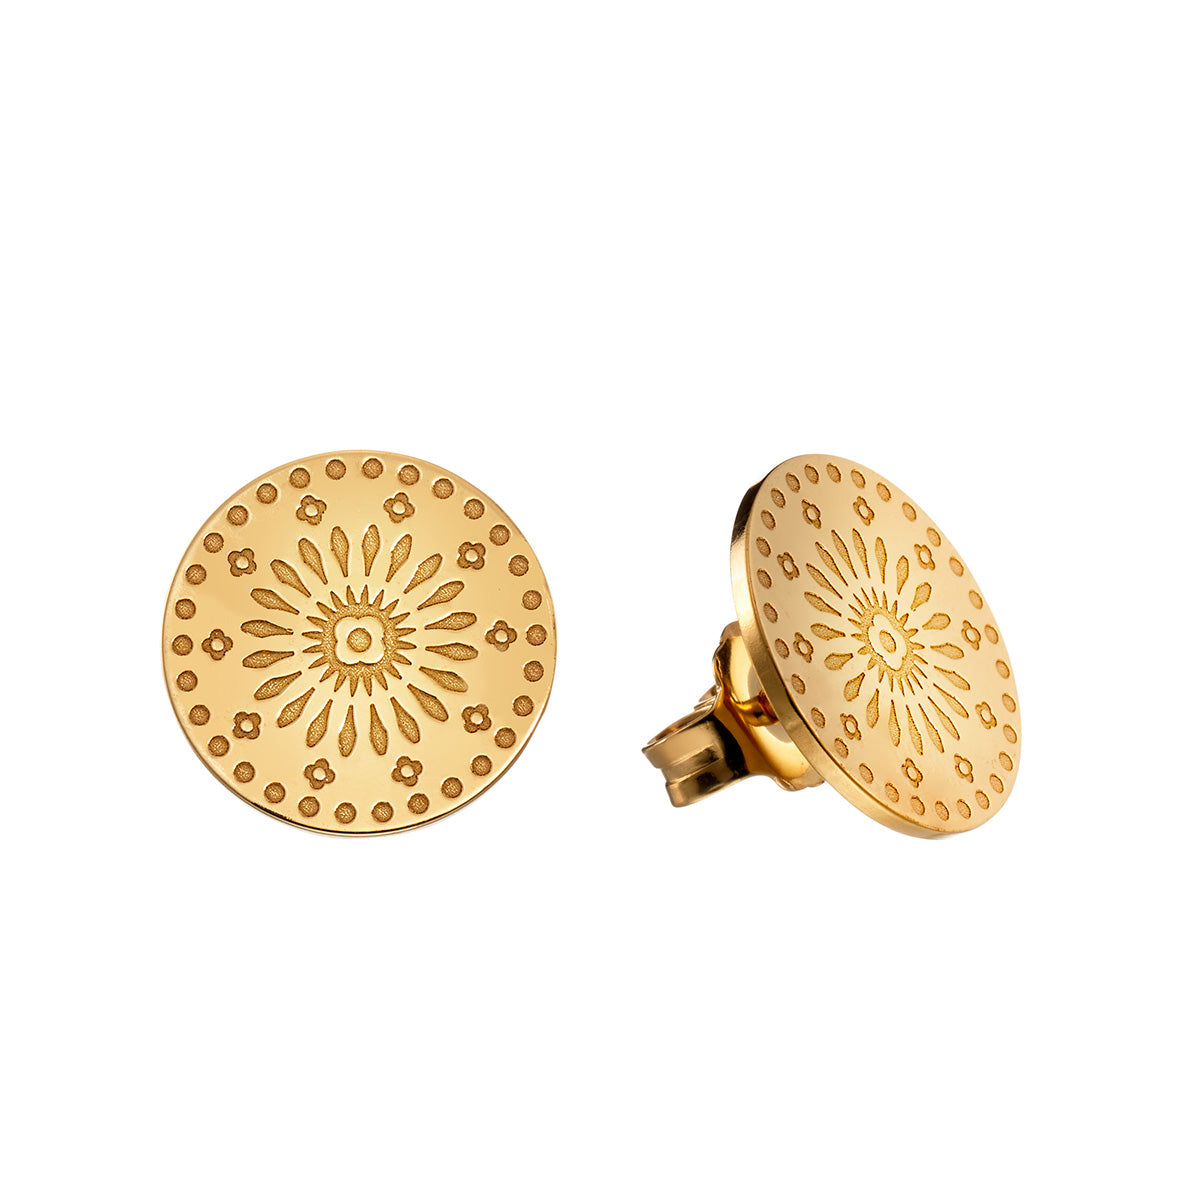 Onnenamuletti earrings, gold plated silver